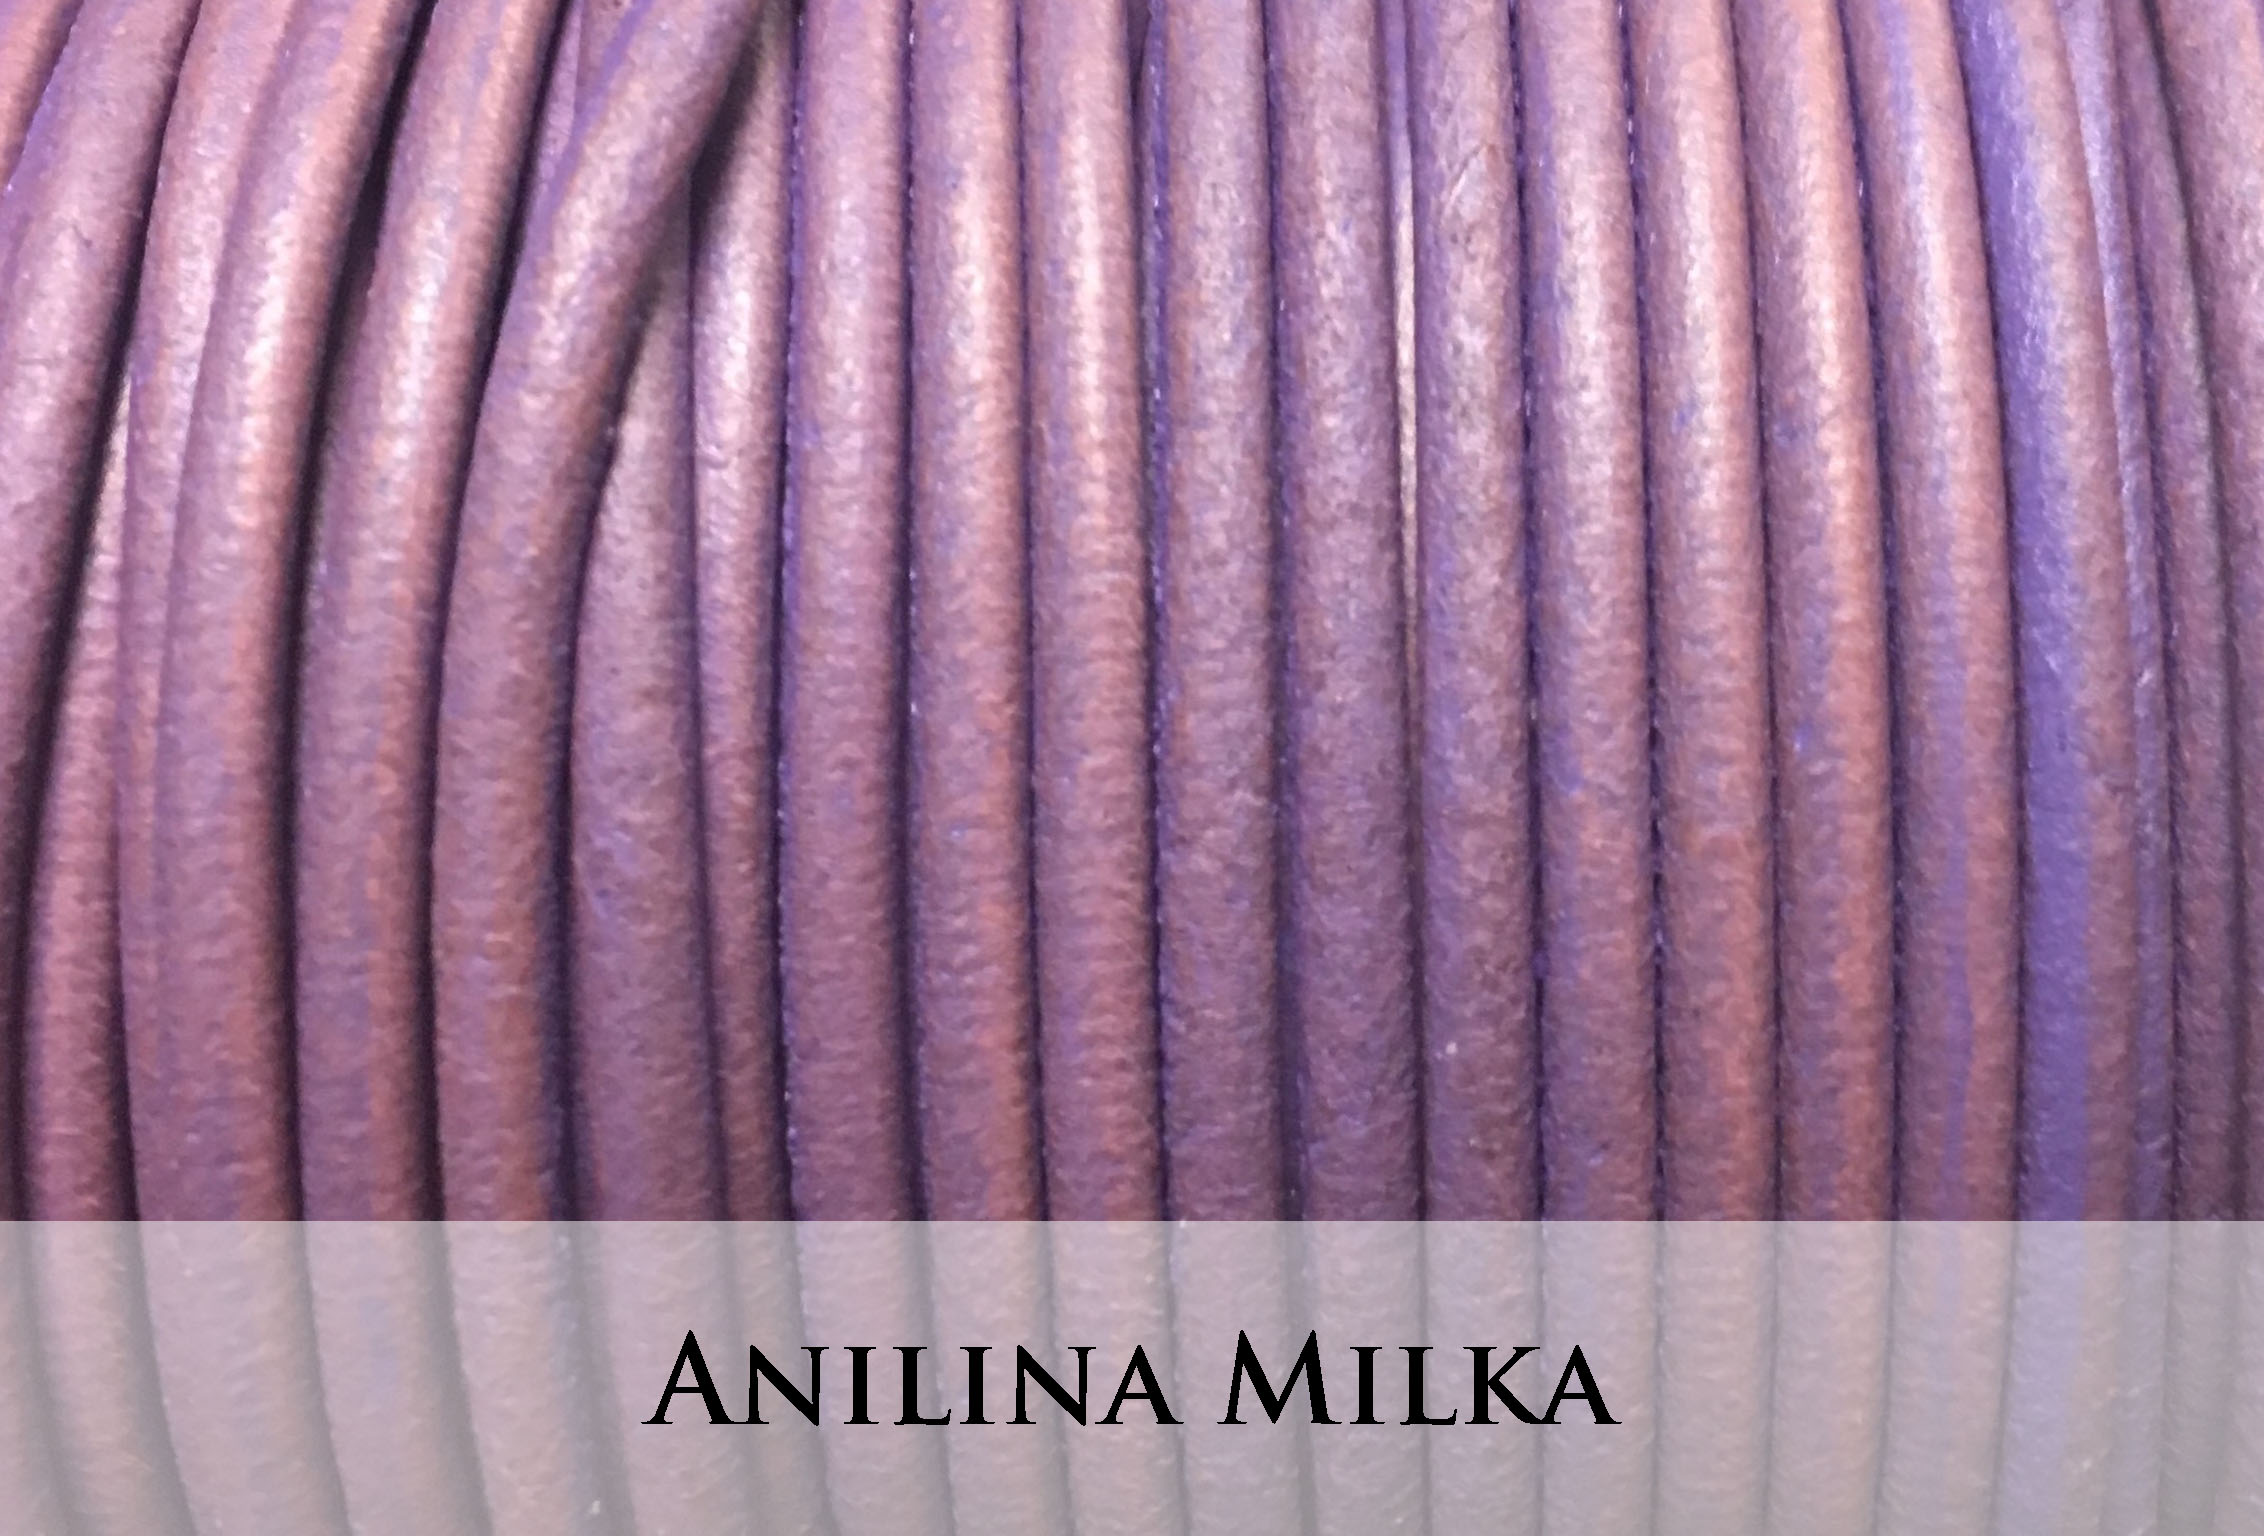 Anilina Milka